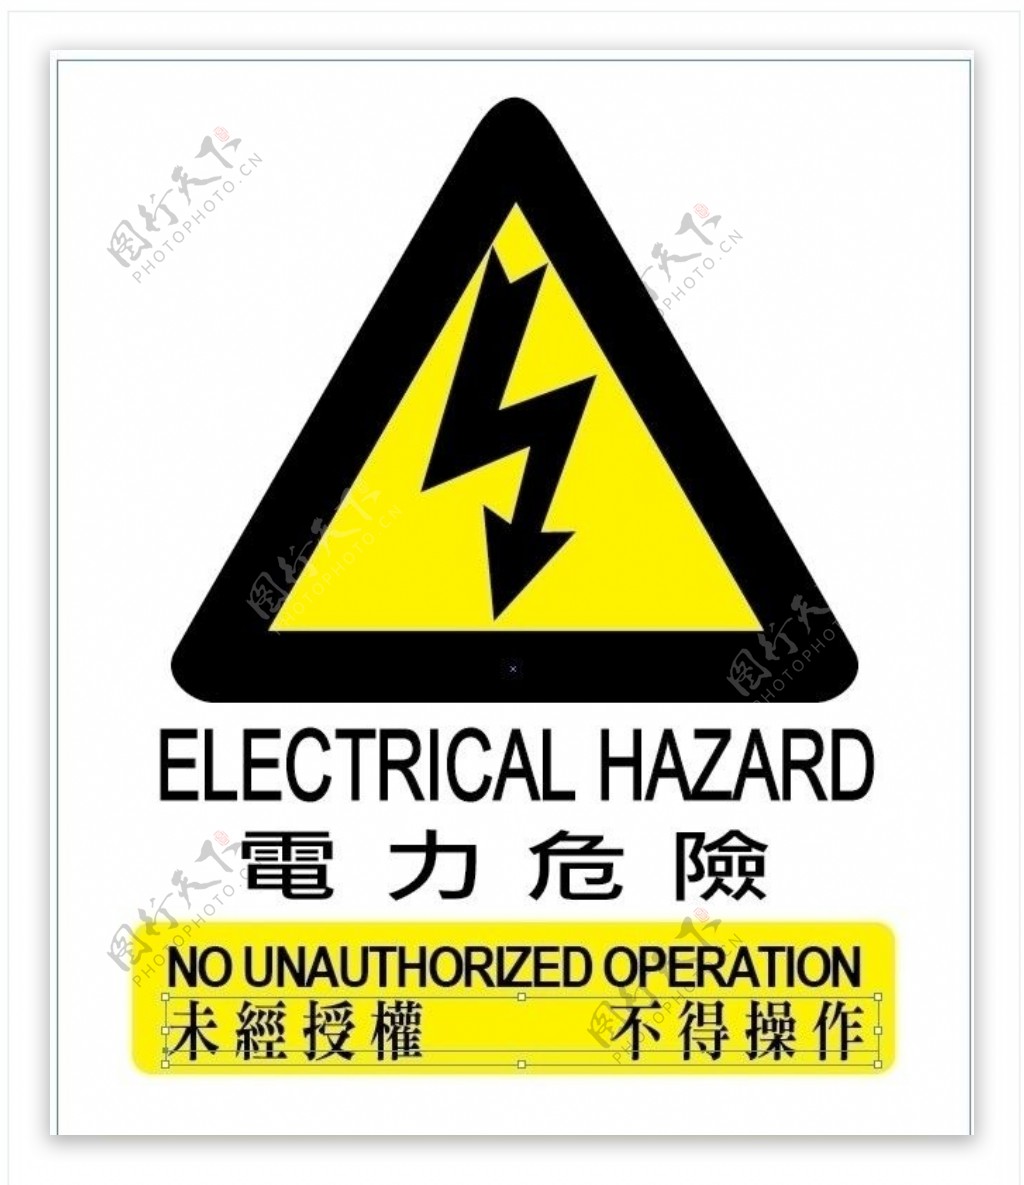 警報標誌電力危險图片